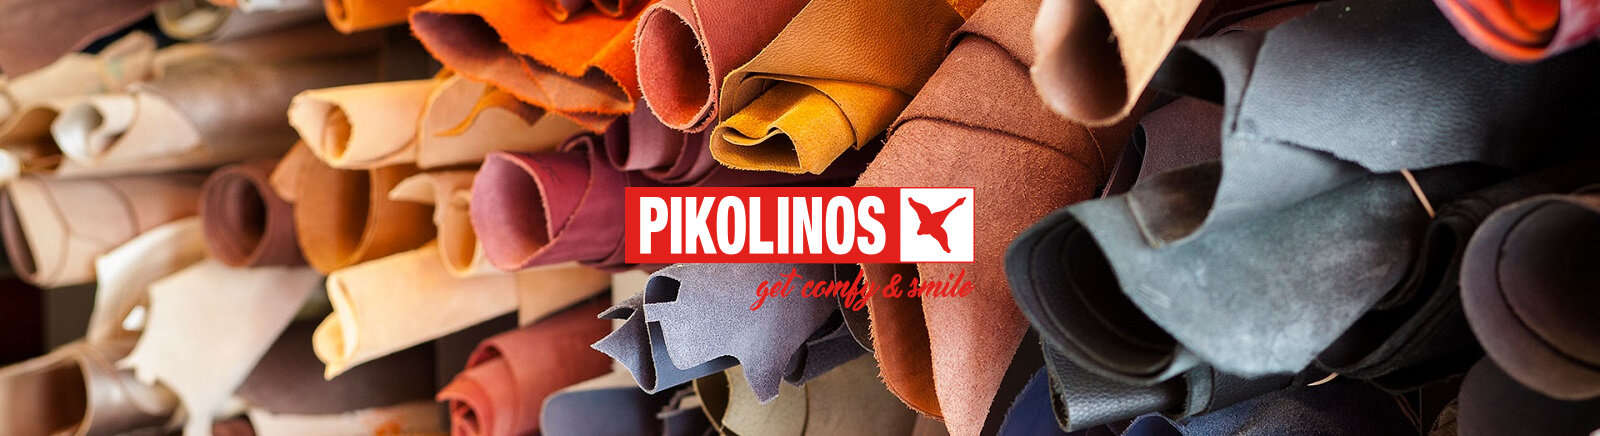 Pikolinos Markenschuhe online entdecken im Juppen Schuhe Shop